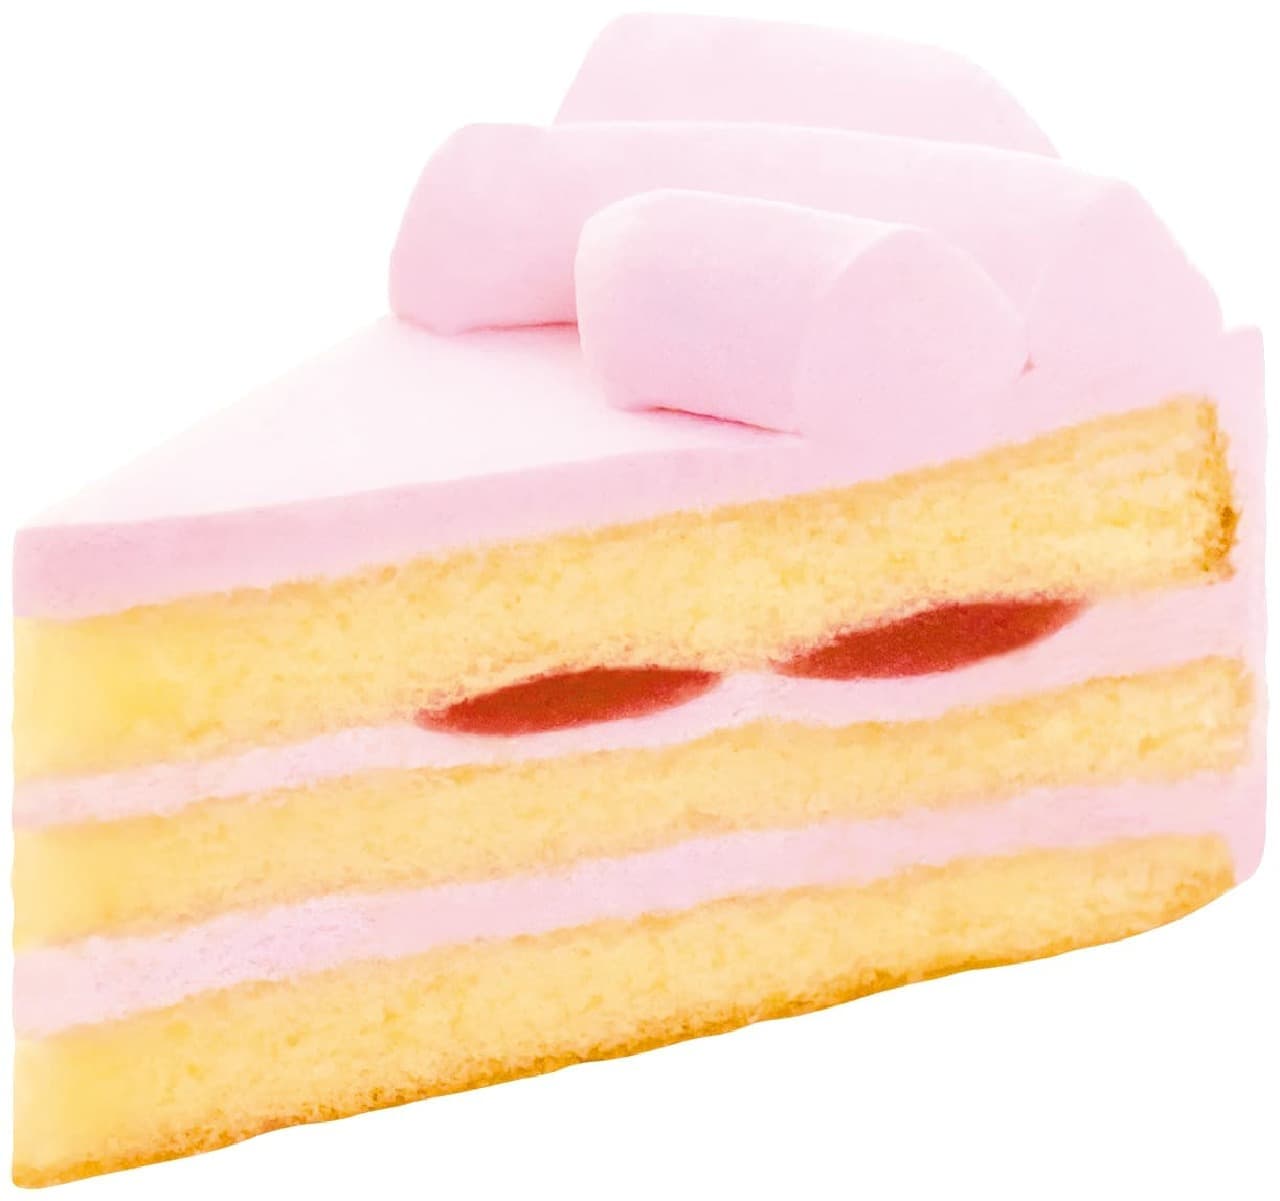 Fujiya "Amao Strawberry Cake" 2 pieces